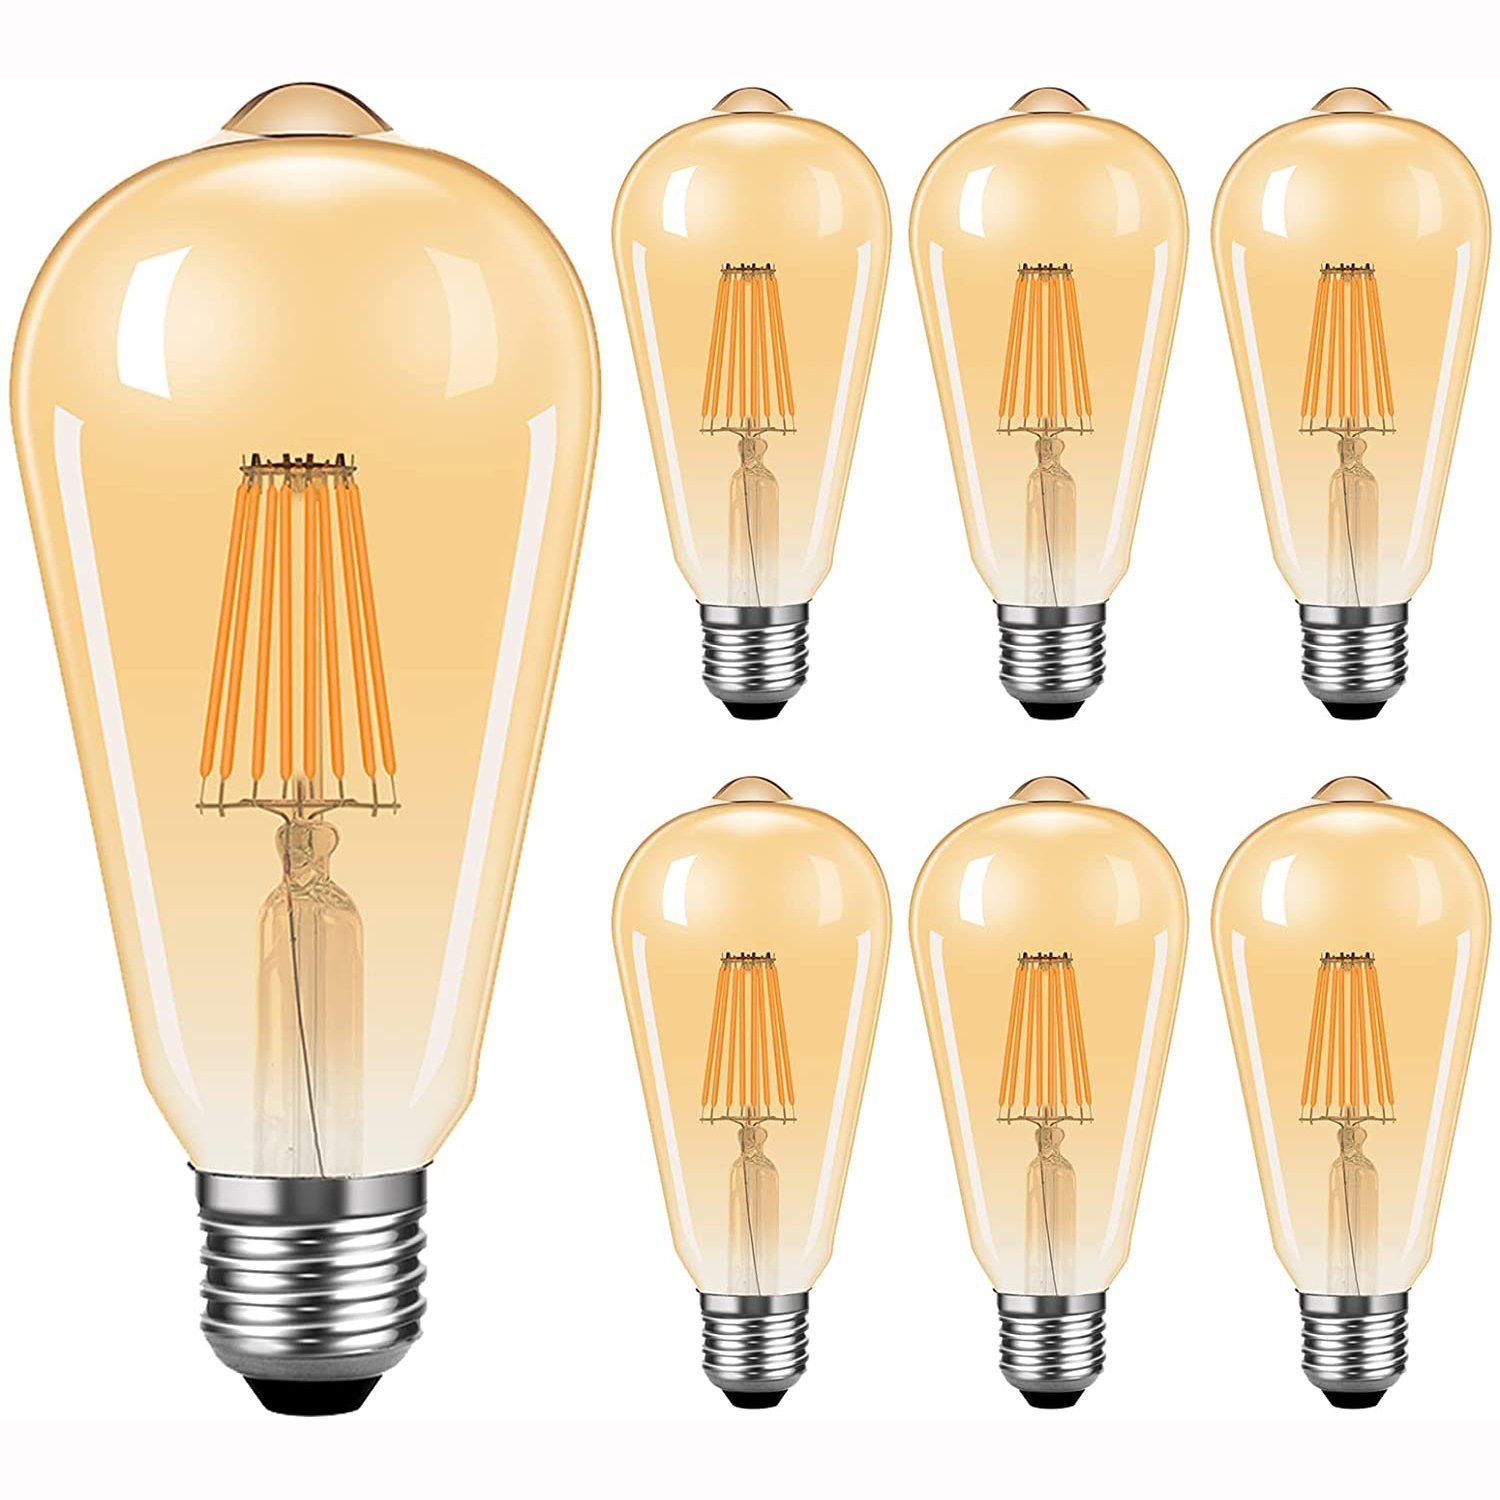 Leway LED Flutlichtstrahler LED Lampen E27 Retro LED Glühbirnen Warmweiß  2300K Energiesparlampe Retro Glühbirne 360 ° Grad Strahlwinkel Birne 6er  Pack (8W)